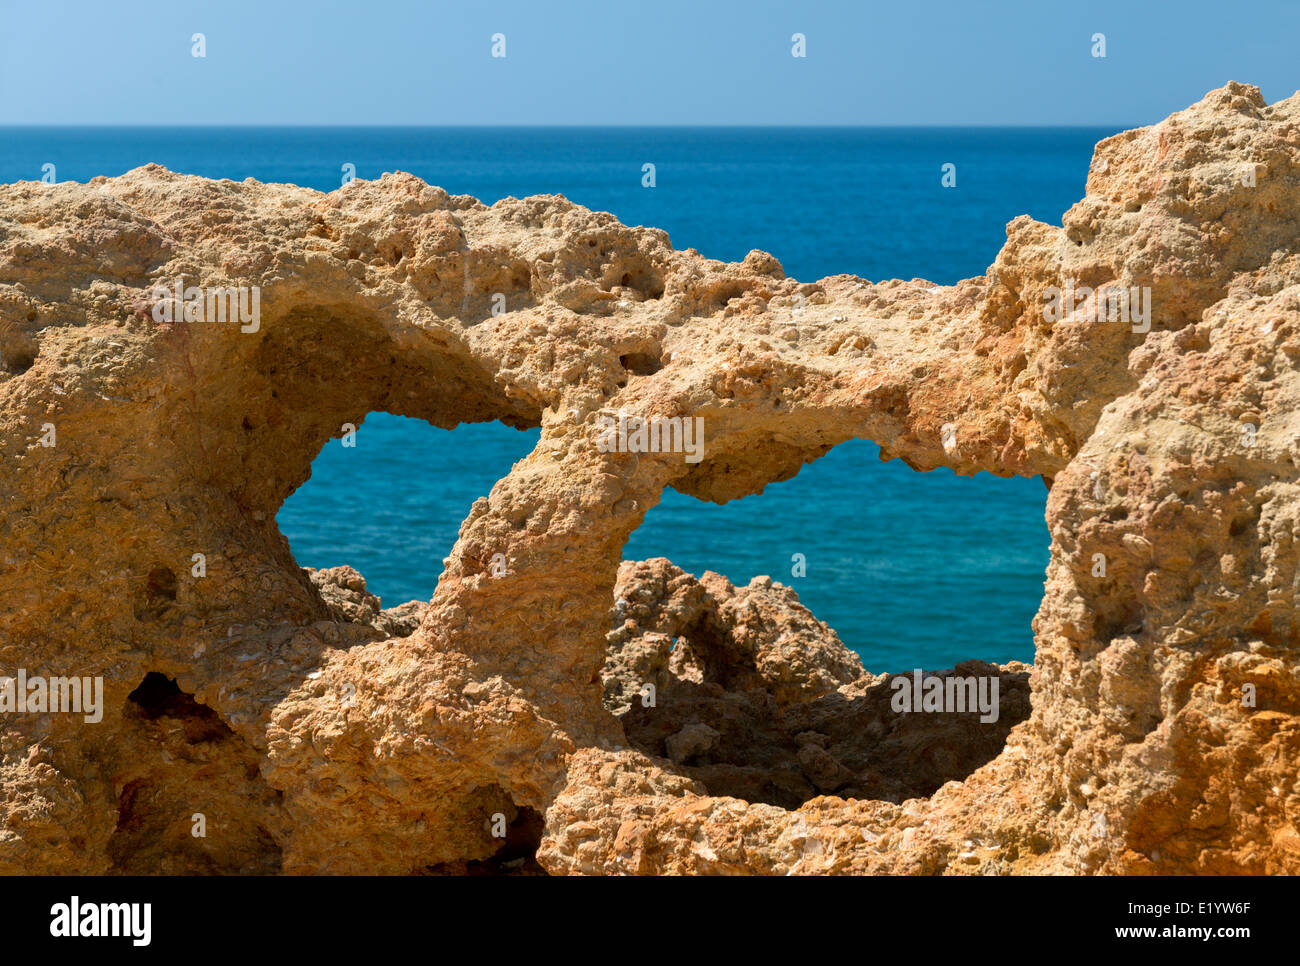 Portugal, Algarve, Carvoeiro, Algar Seco rock formations Stock Photo